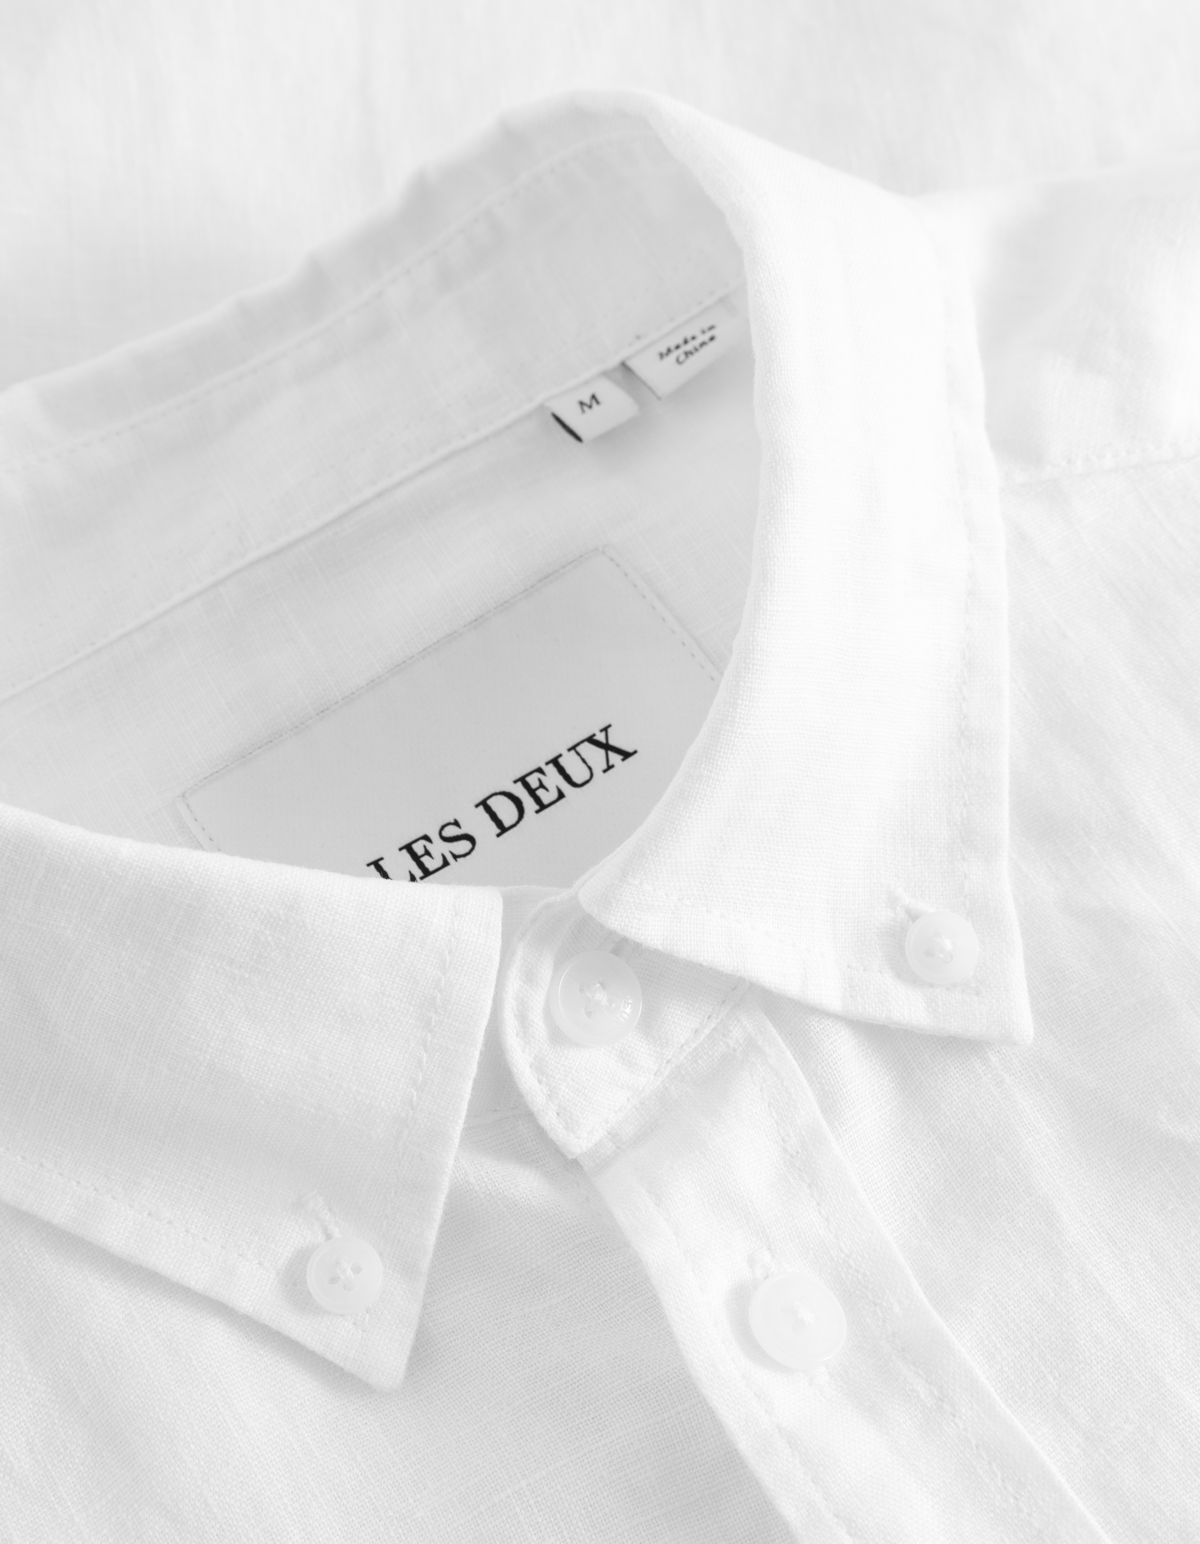 Kris Linen SS Shirt